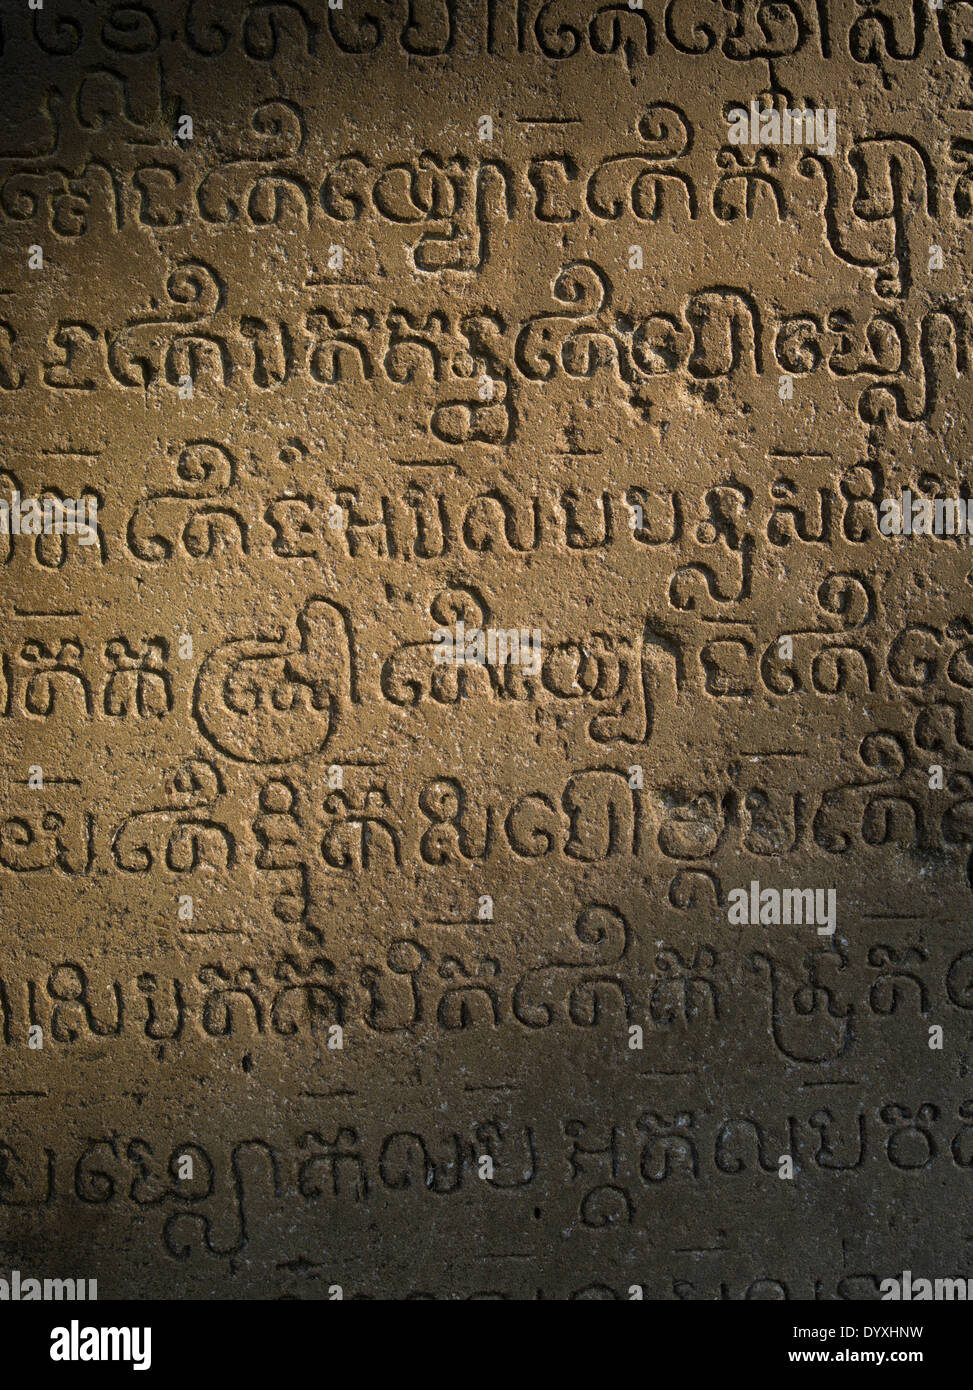 Scritti incisi nella pietra a Prasat Chap Kra parte del Tempio di Koh Ker 127 NE di Siem Reap, Cambogia Foto Stock